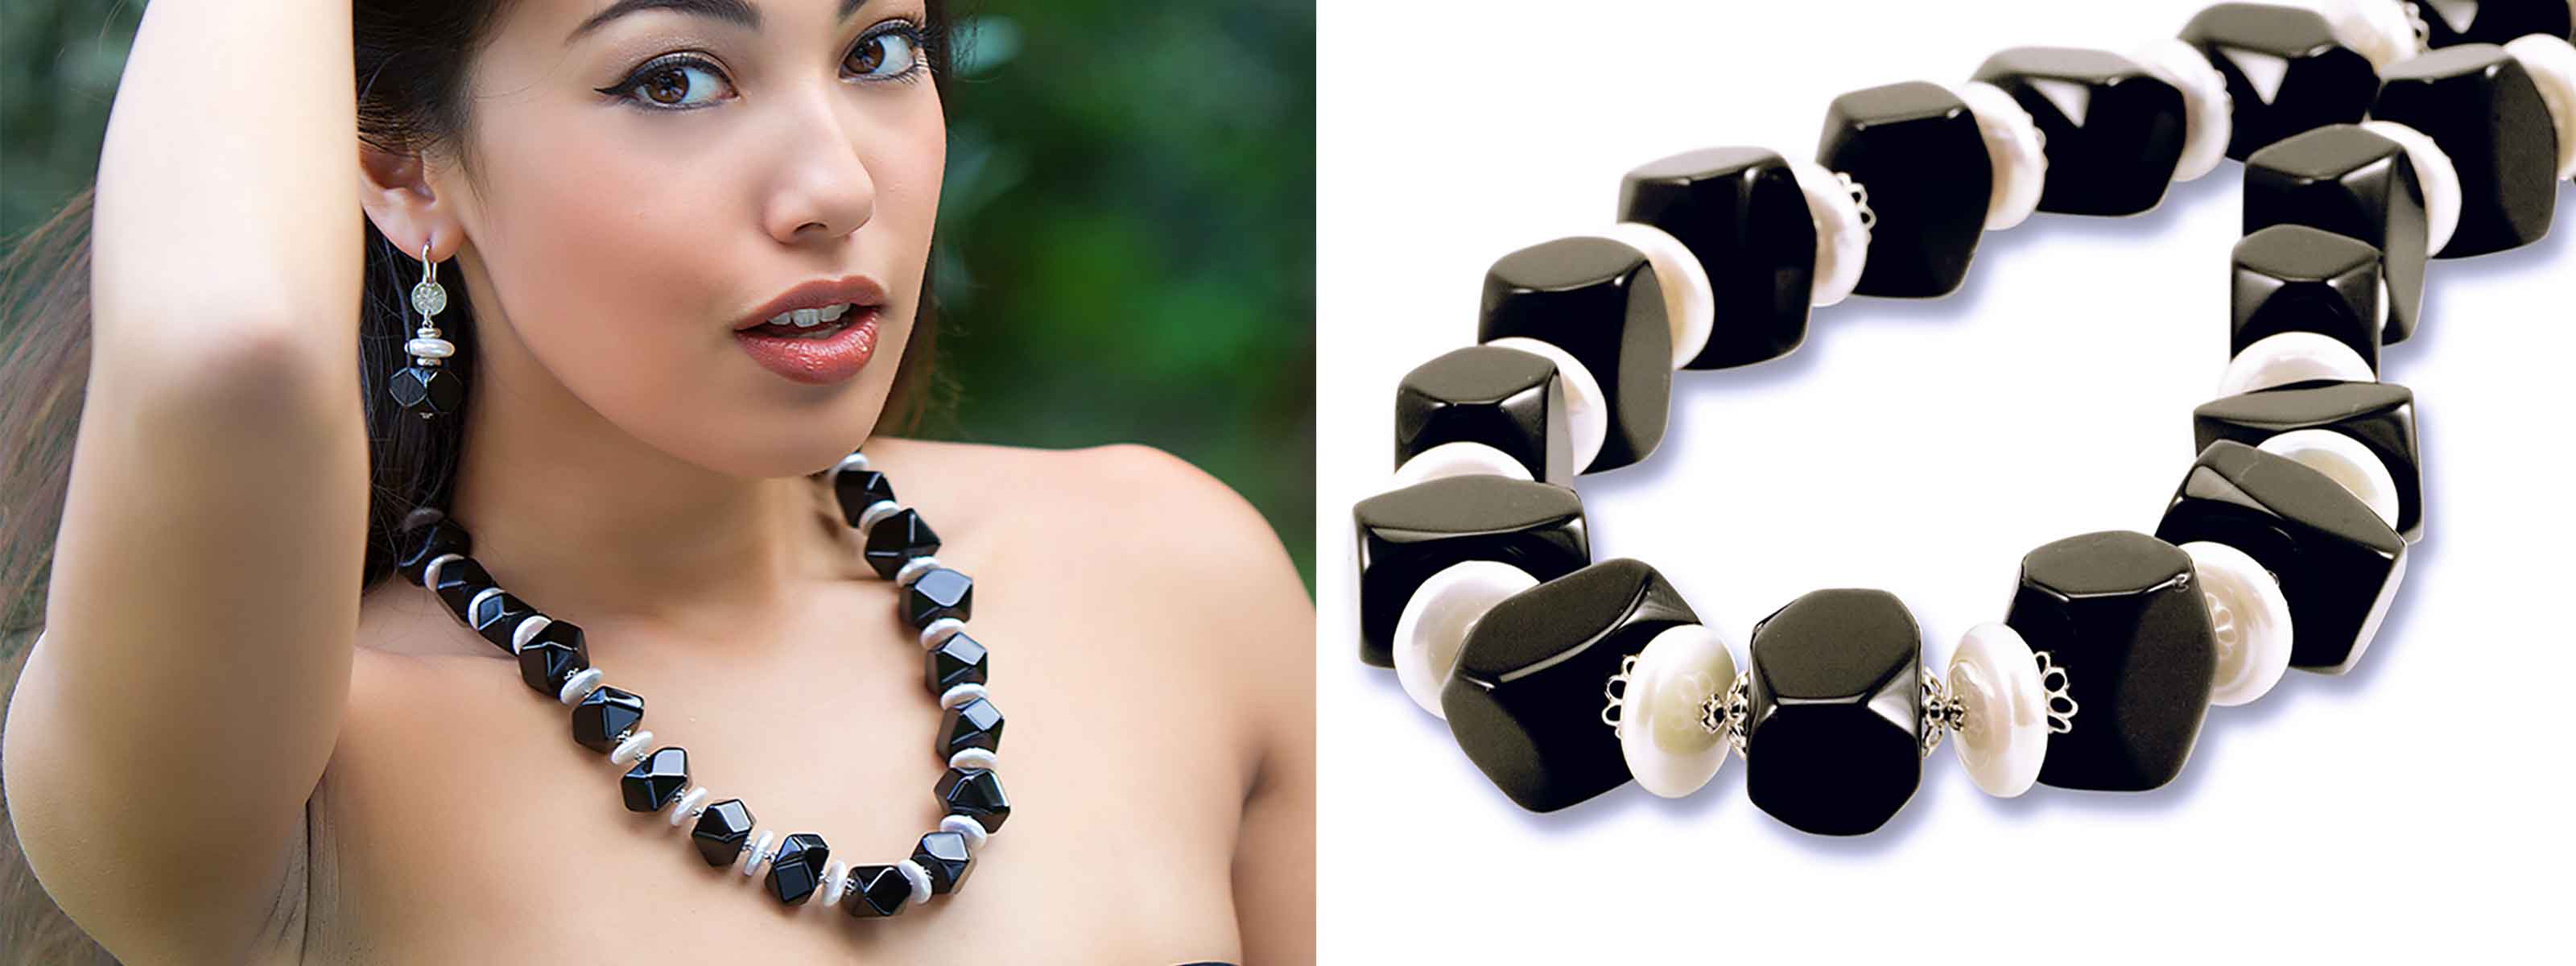 gioielli in pietre dure e argento offerte collane bracciali orecchini - via condotti store